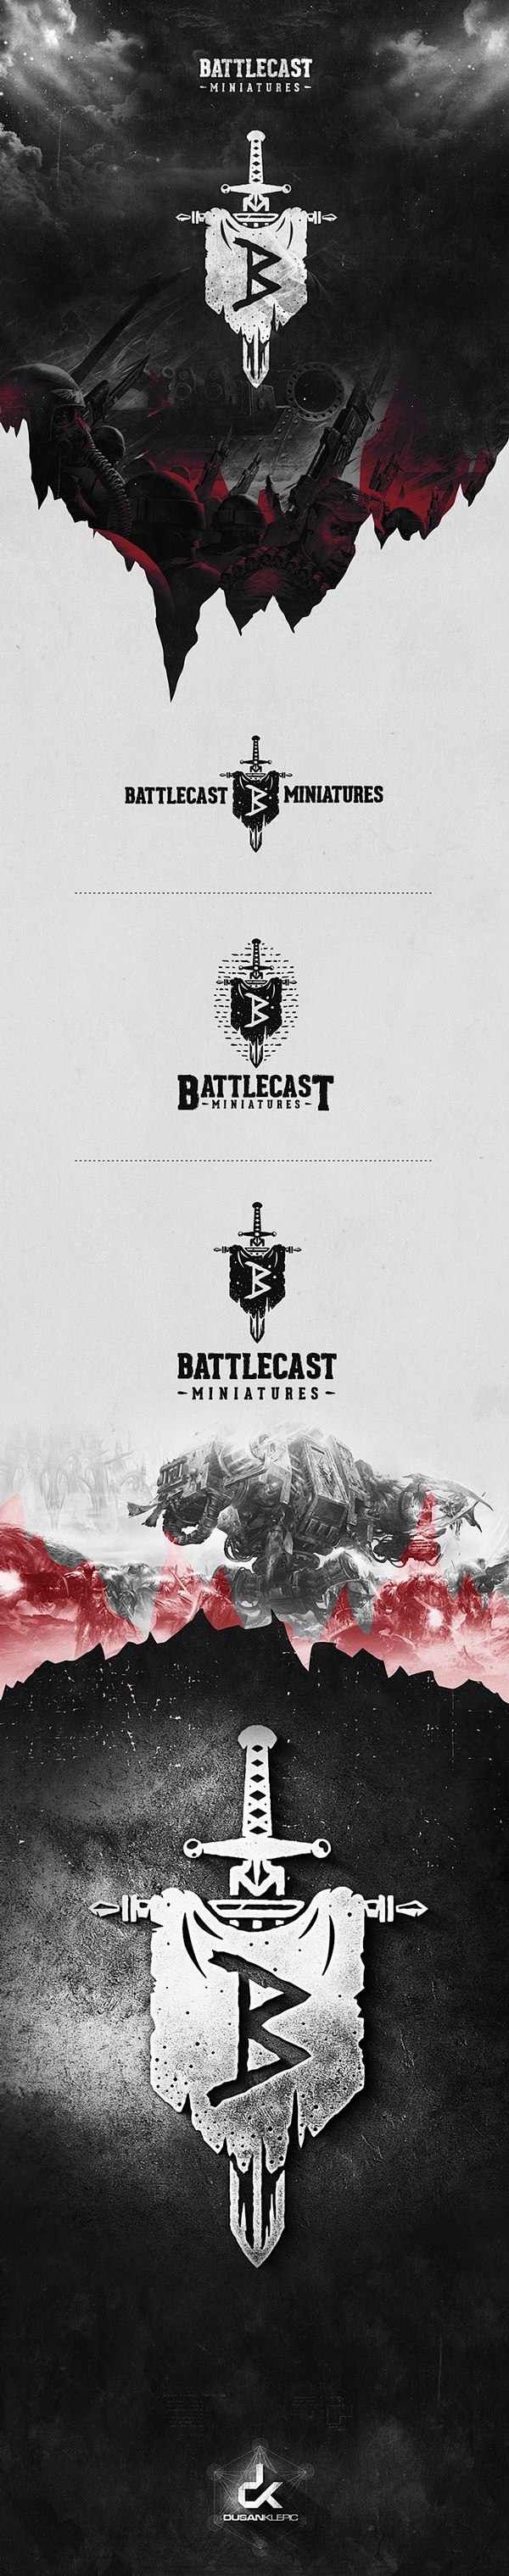 Battlecast Miniature...